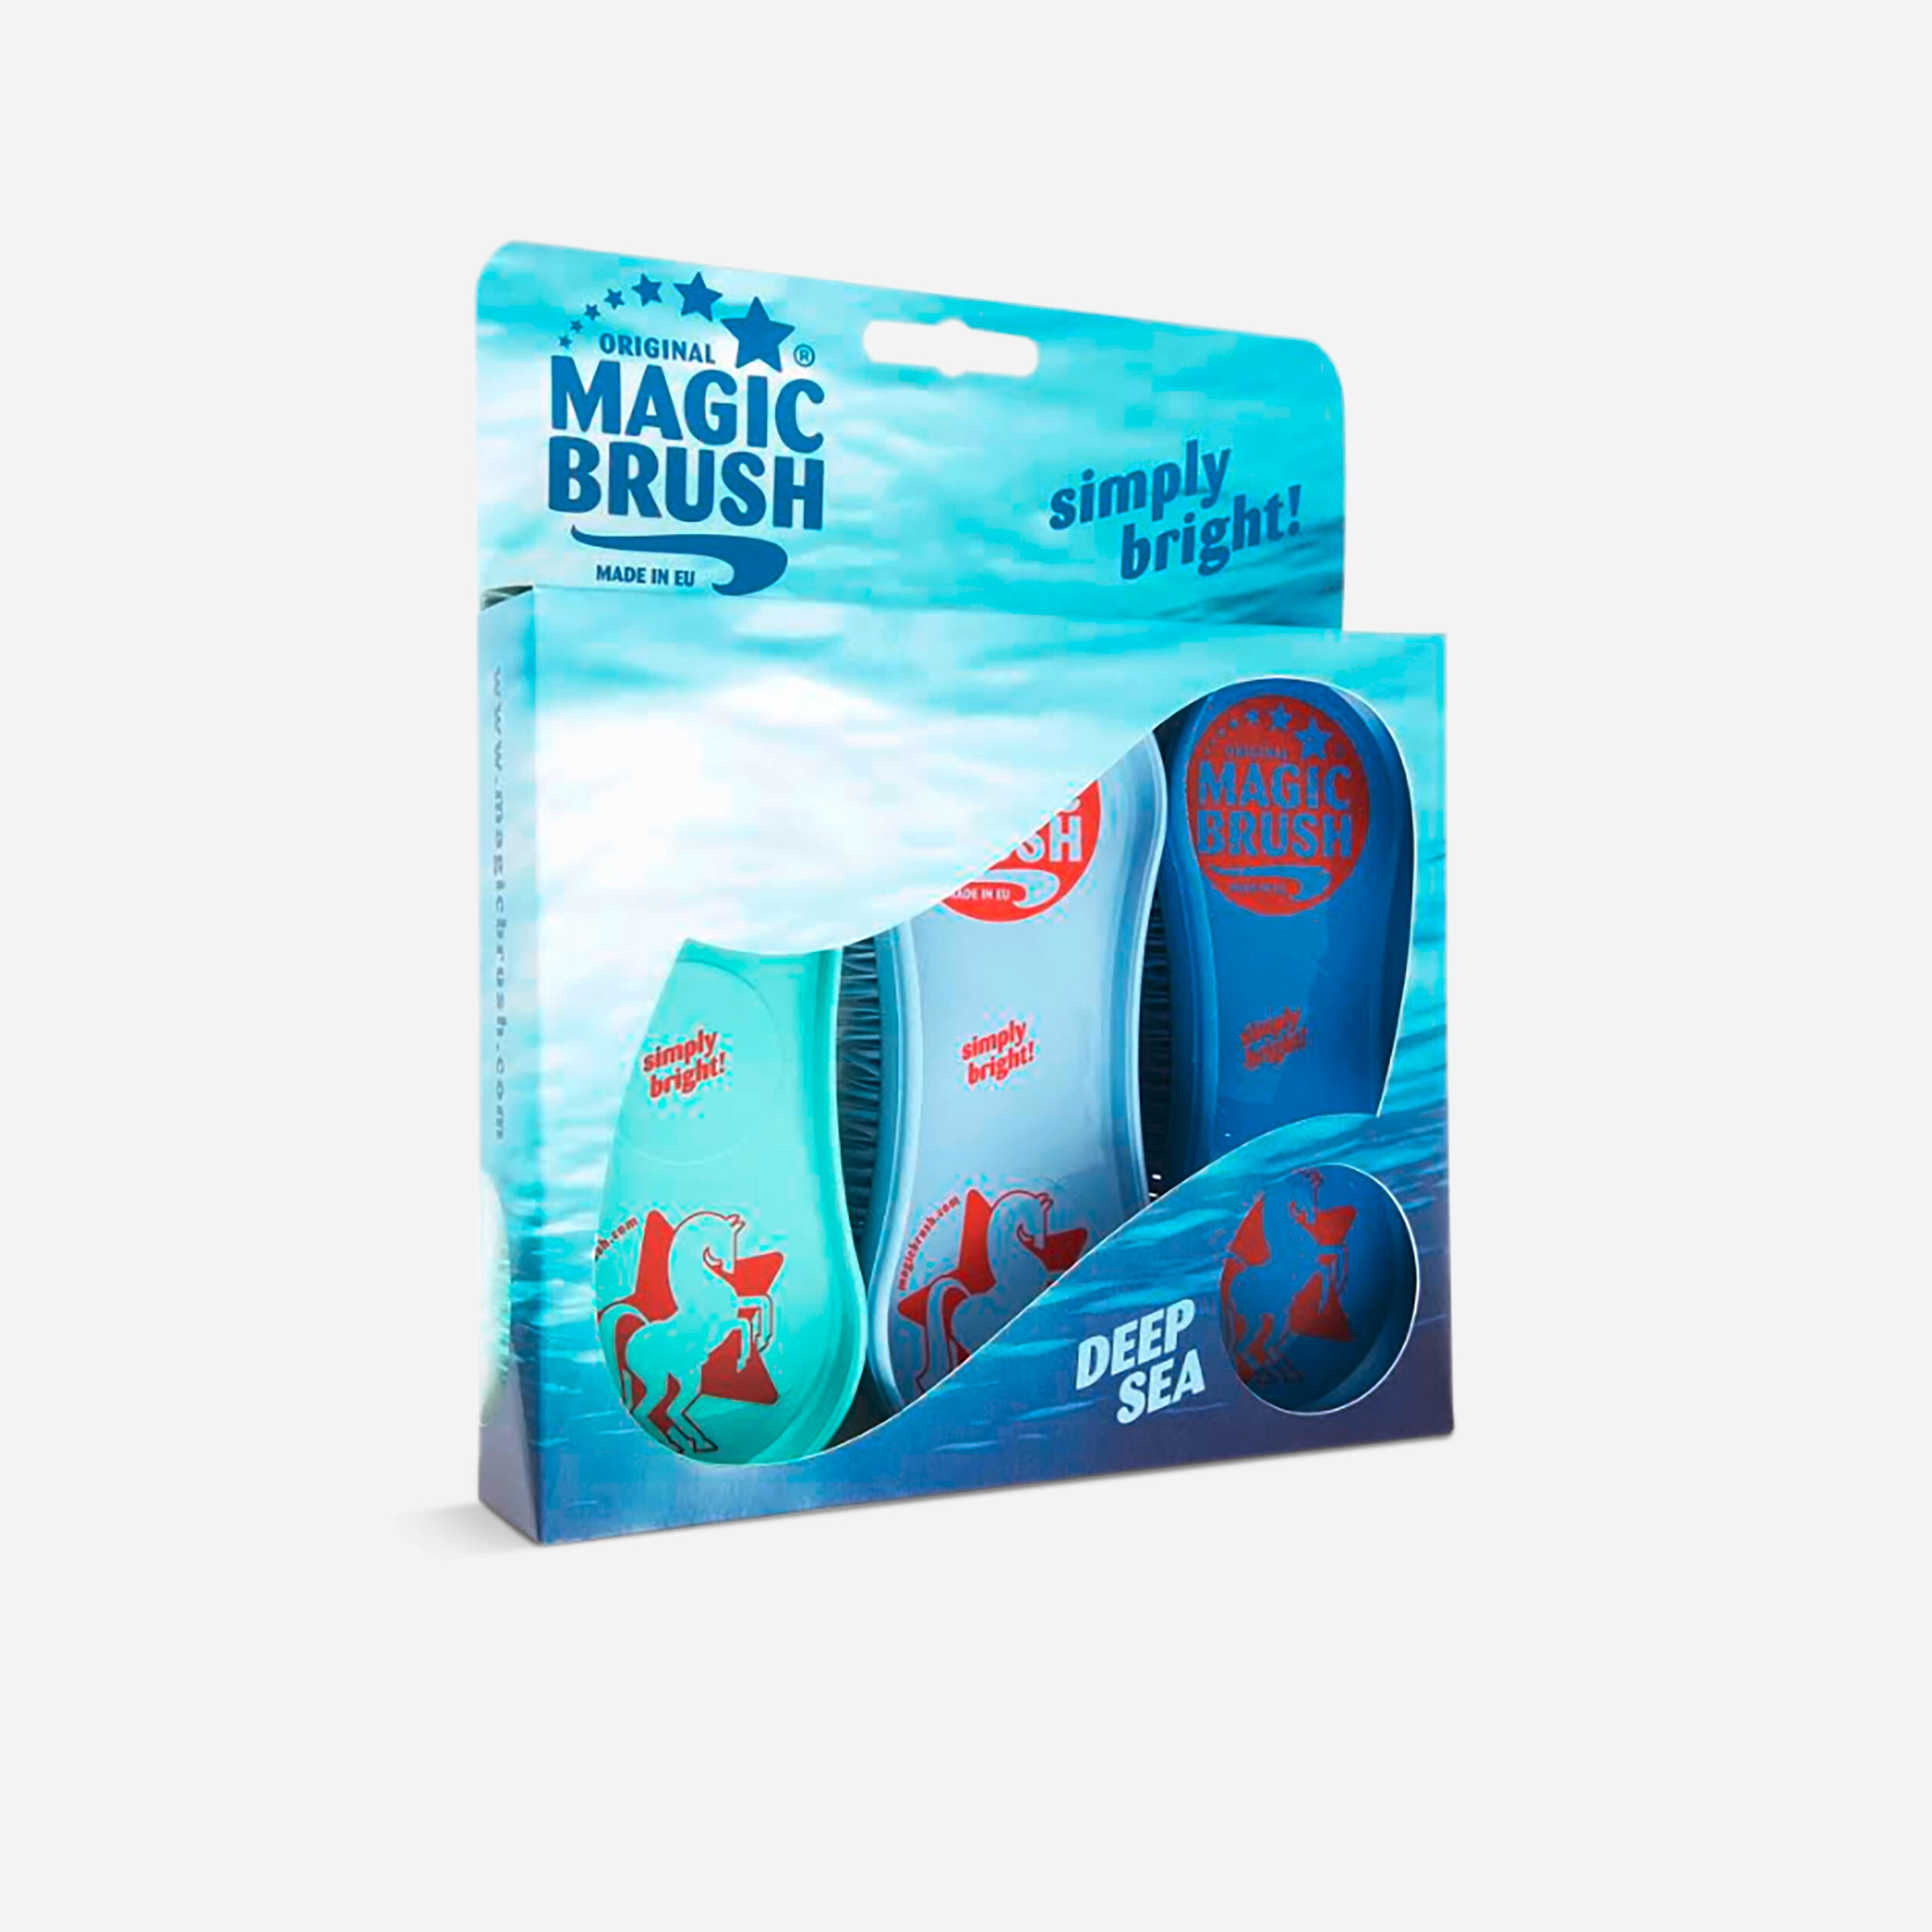 KERBL Magic Brush Horse Riding Brushes Tri-Pack - Turquoise/Mauve/Blue